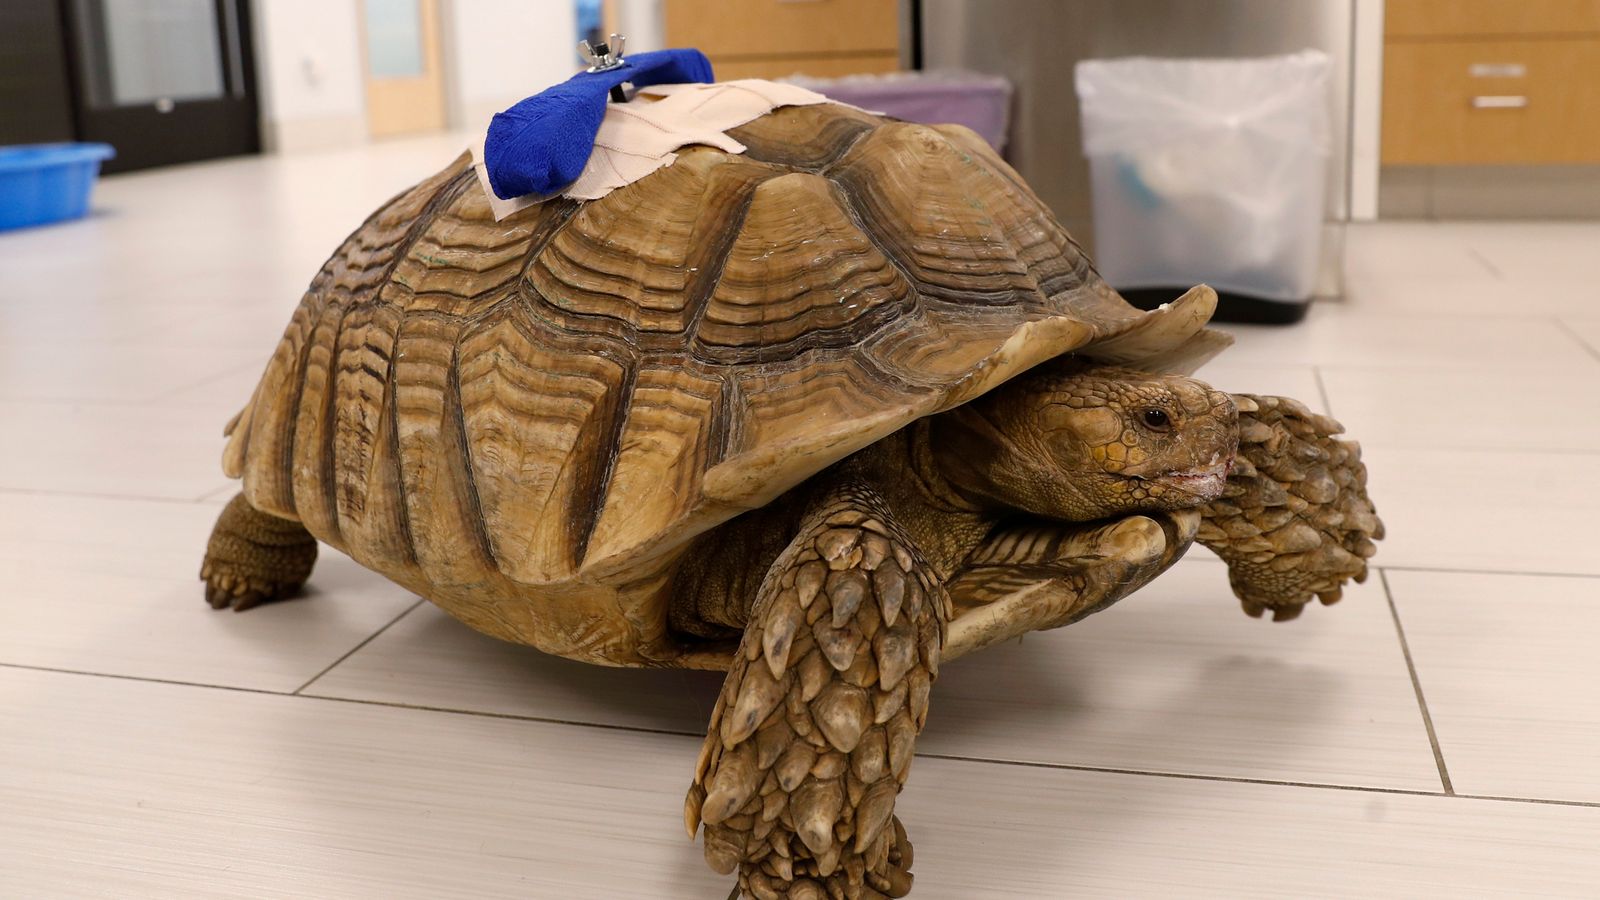 Mężczyzna z Kalifornii unika więzienia po tym, jak pijany dźgnął żółwia domowego w przedszkolu |  Wiadomości z USA